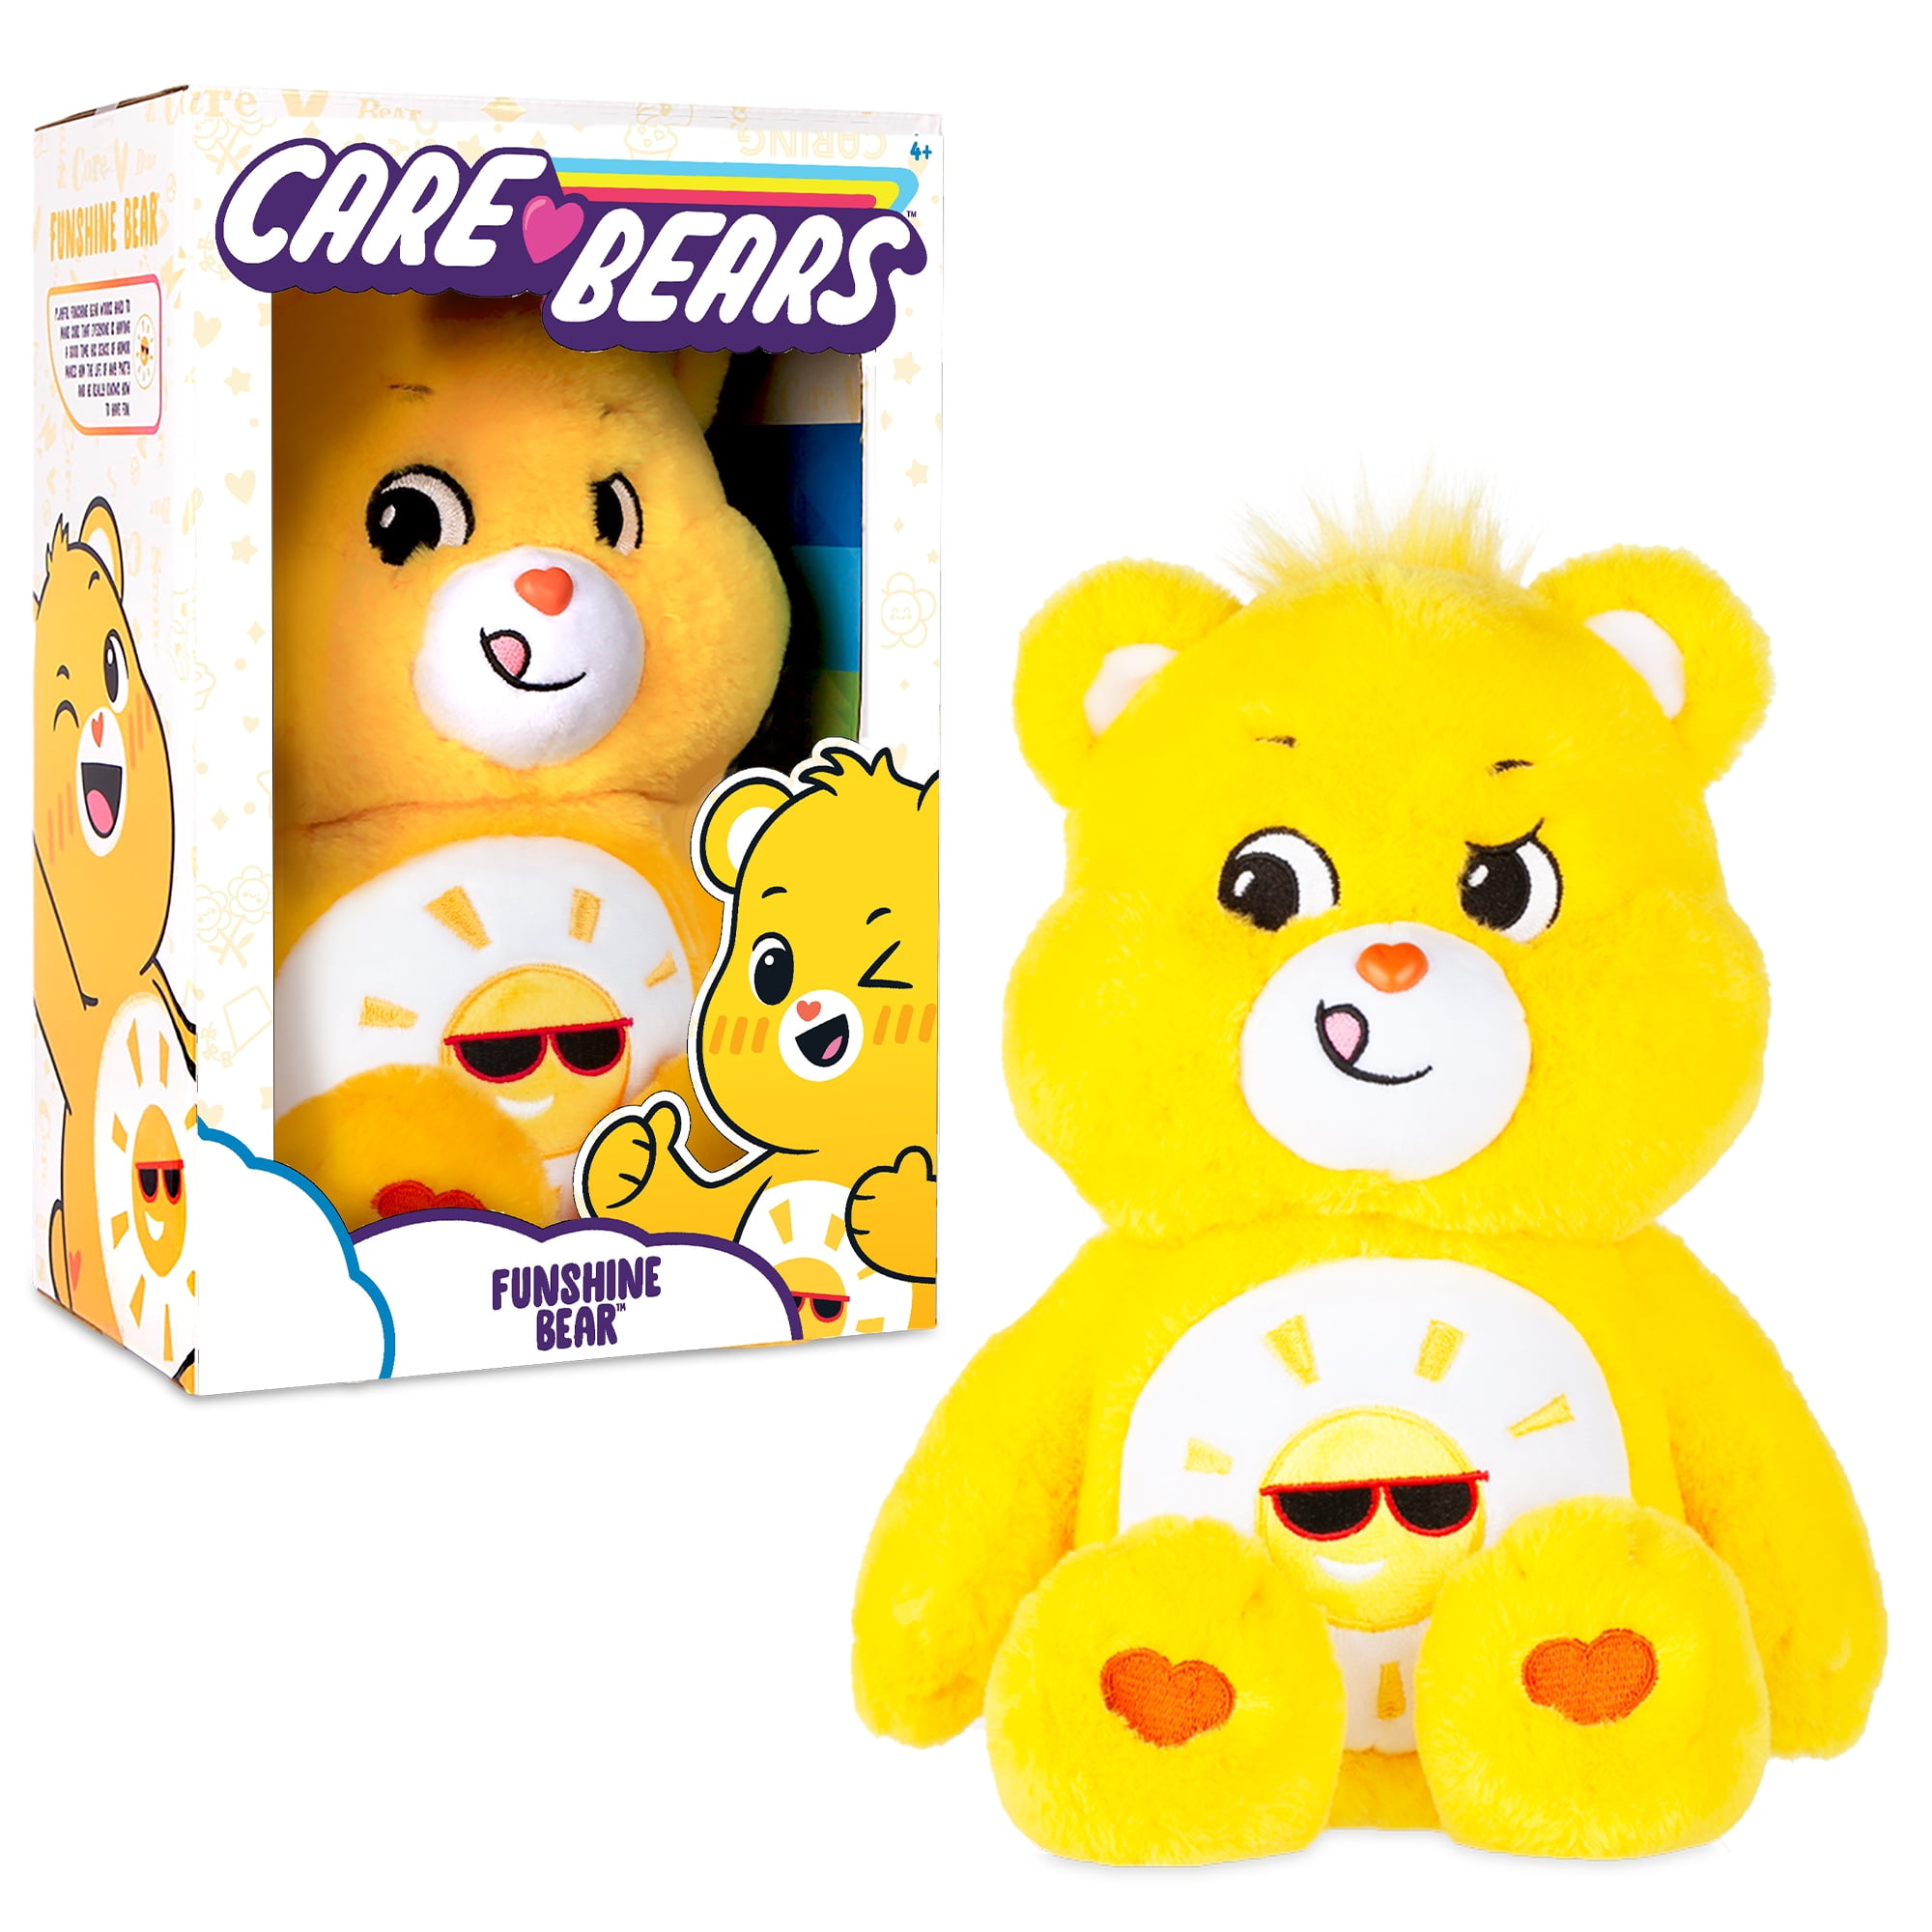 2020 Care Bears 14 Medium Plush Soft Huggable Material Funshine Bear in Hand for sale online